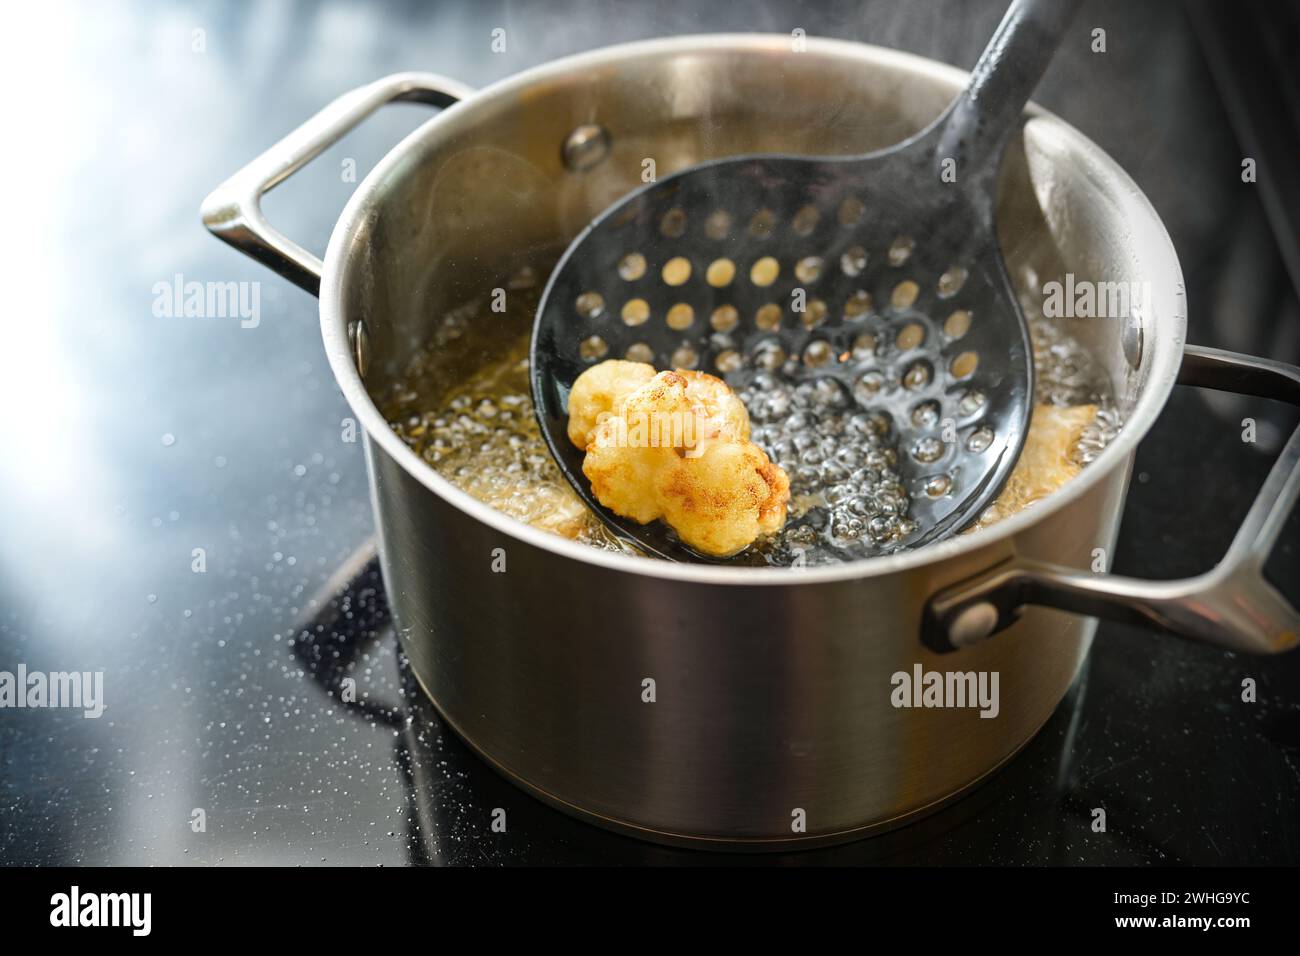 Blumenkohlblume auf einem Spachtel in einem Topf frittiert mit dampfendem Speiseöl auf dem Herd, kreative Zubereitung eines Gemüses Stockfoto